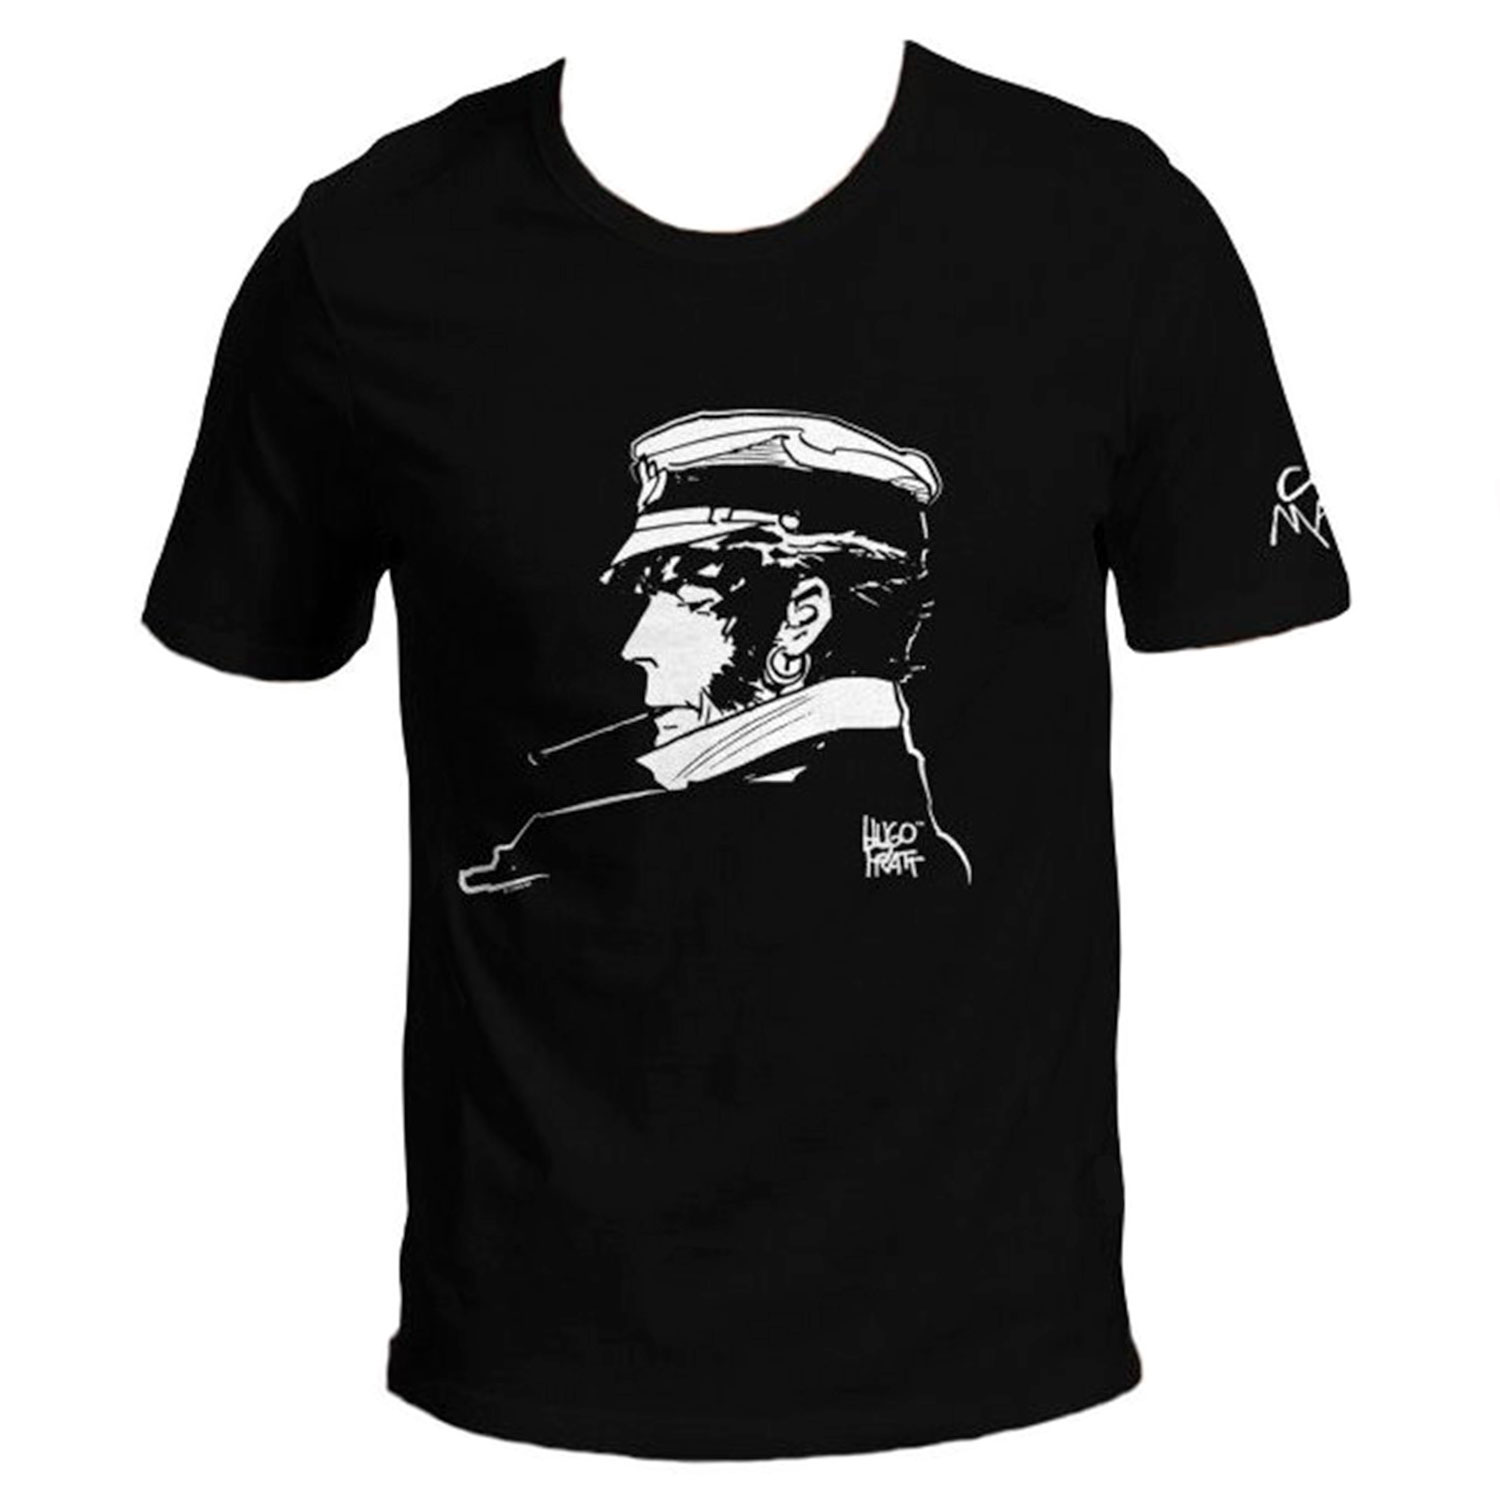 Hugo Pratt T-shirt : Corto Maltese , Cigarette - Black - Size M